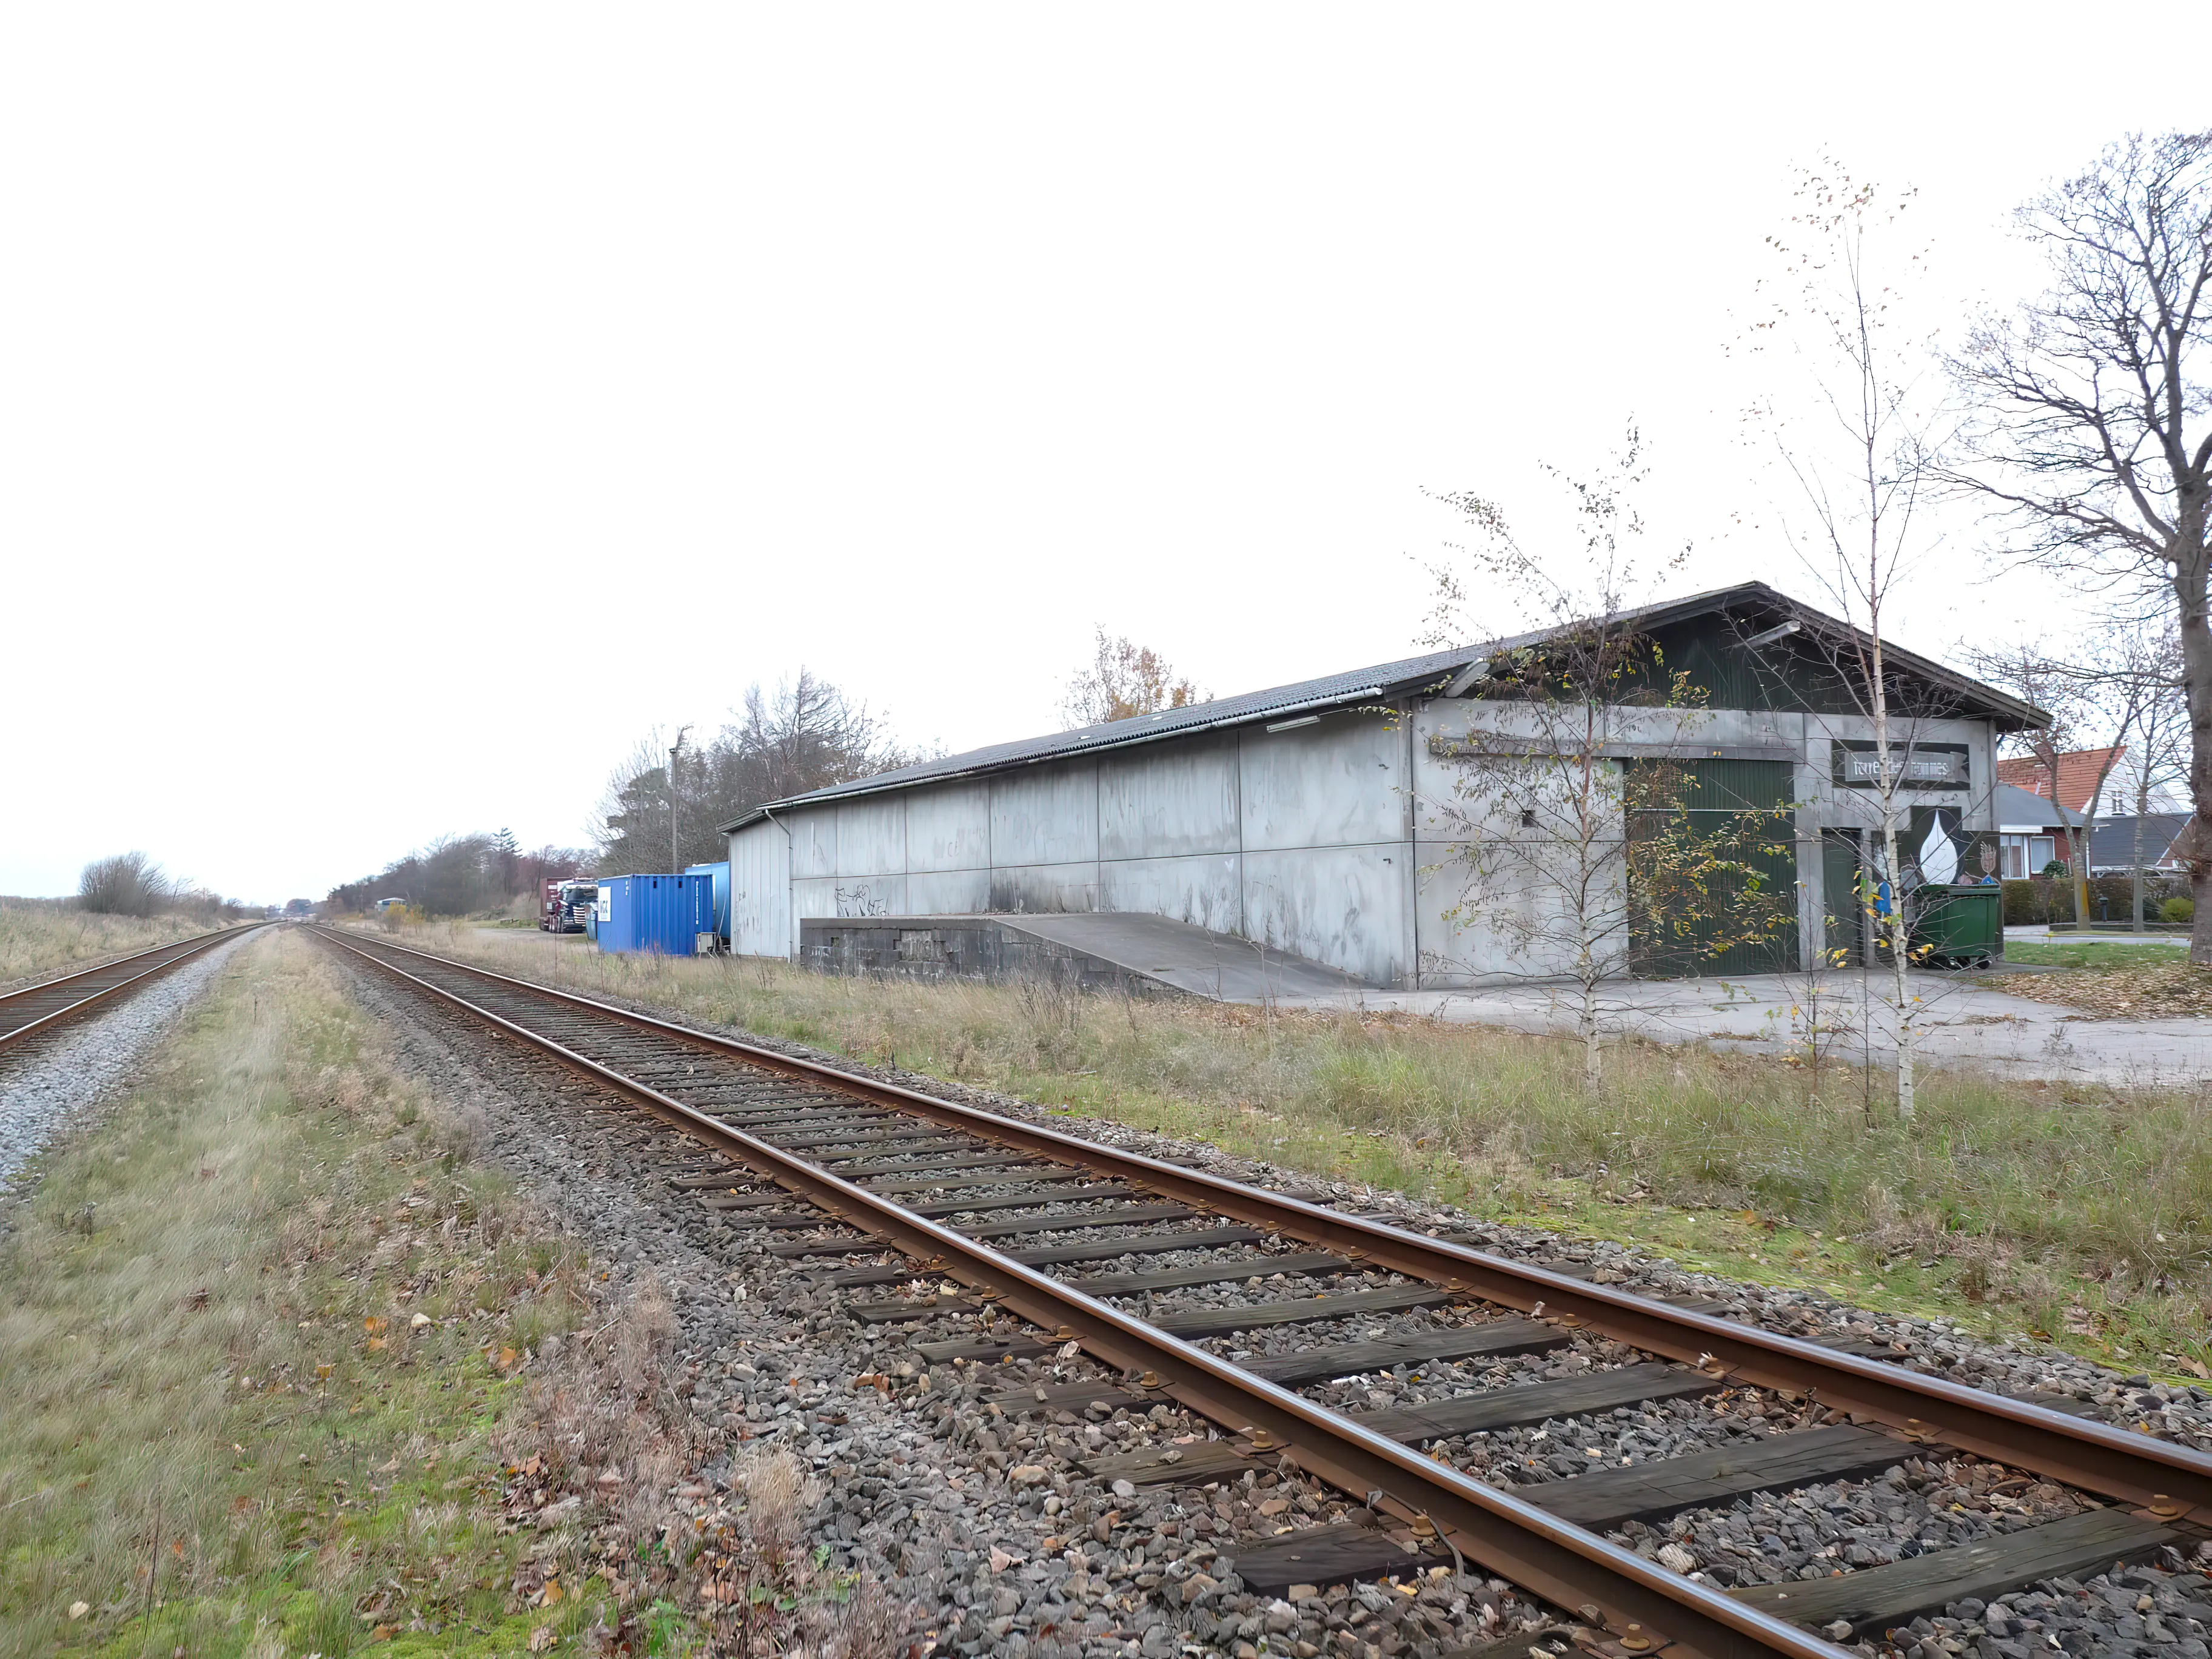 Billede af Sulsted Station - Station er nedrevet, men Sulsted Station har ligget her.